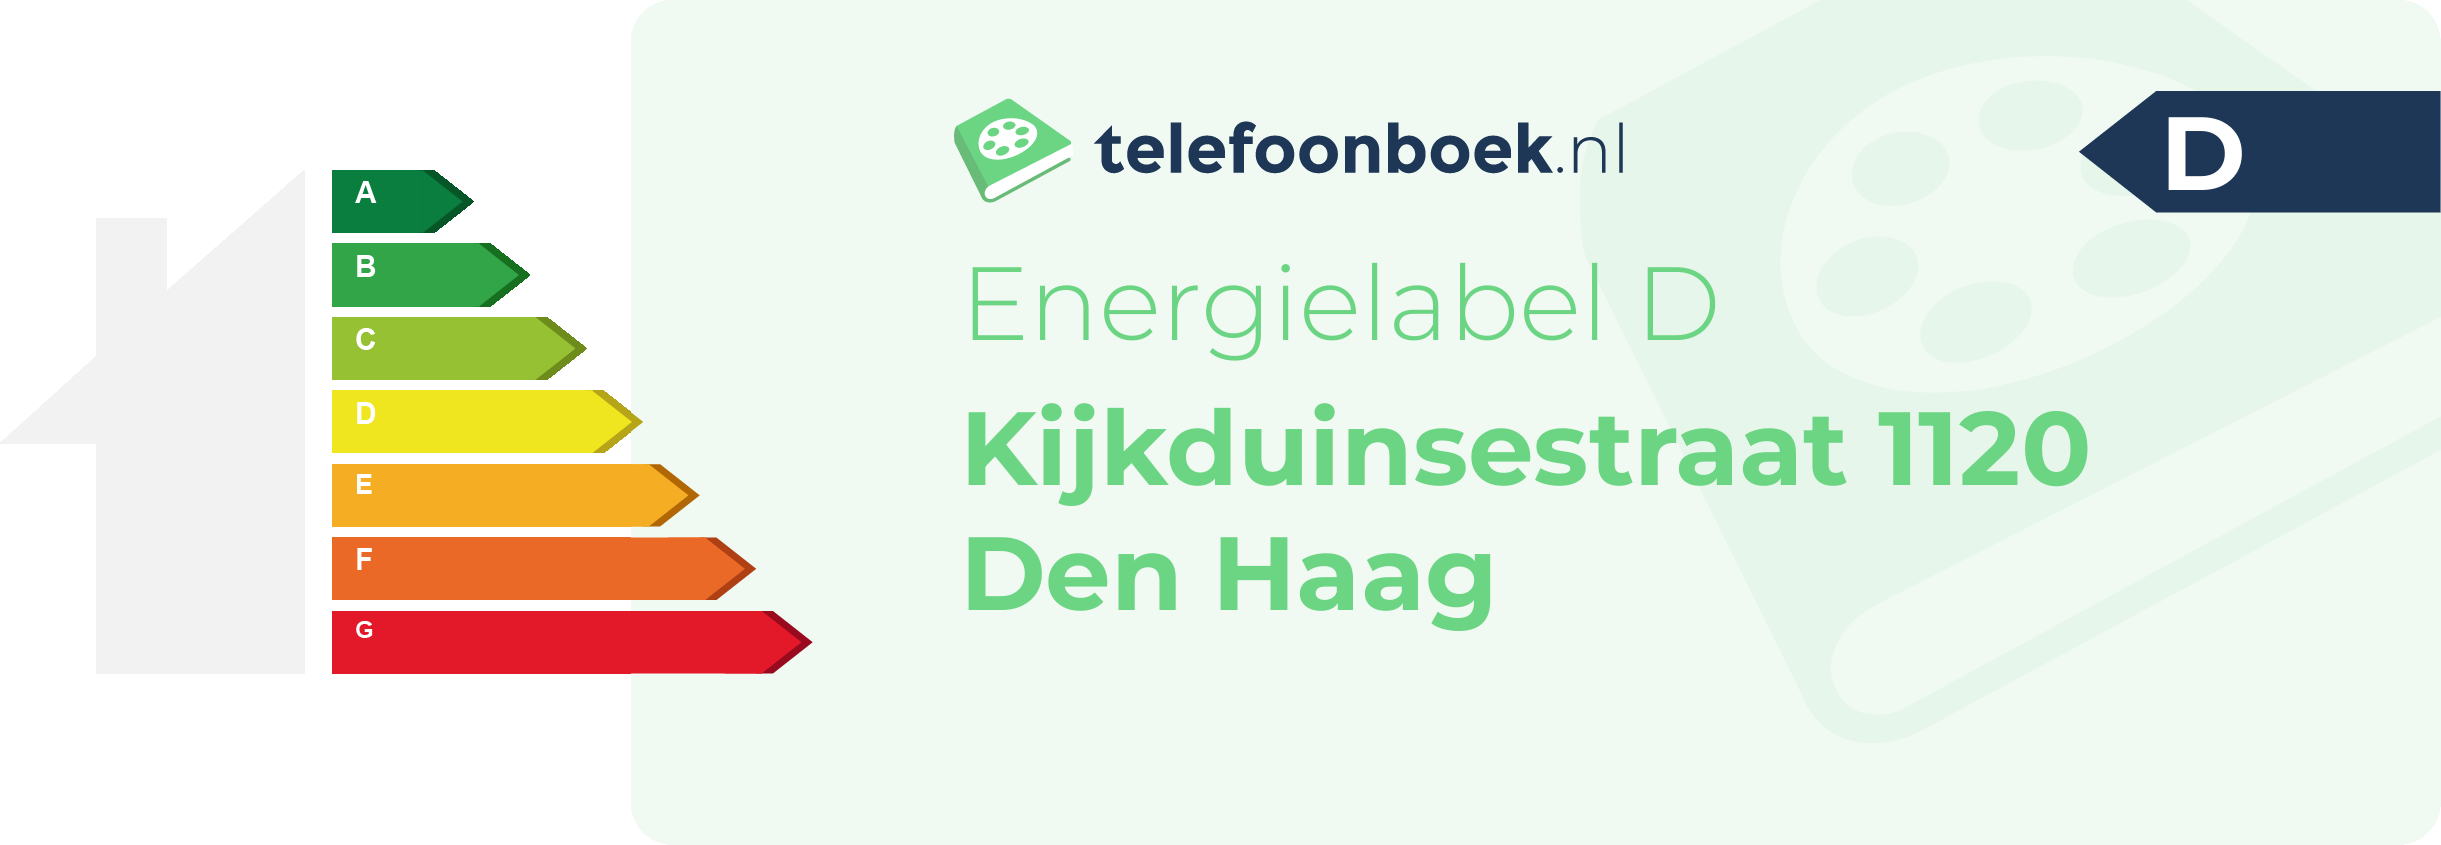 Energielabel Kijkduinsestraat 1120 Den Haag